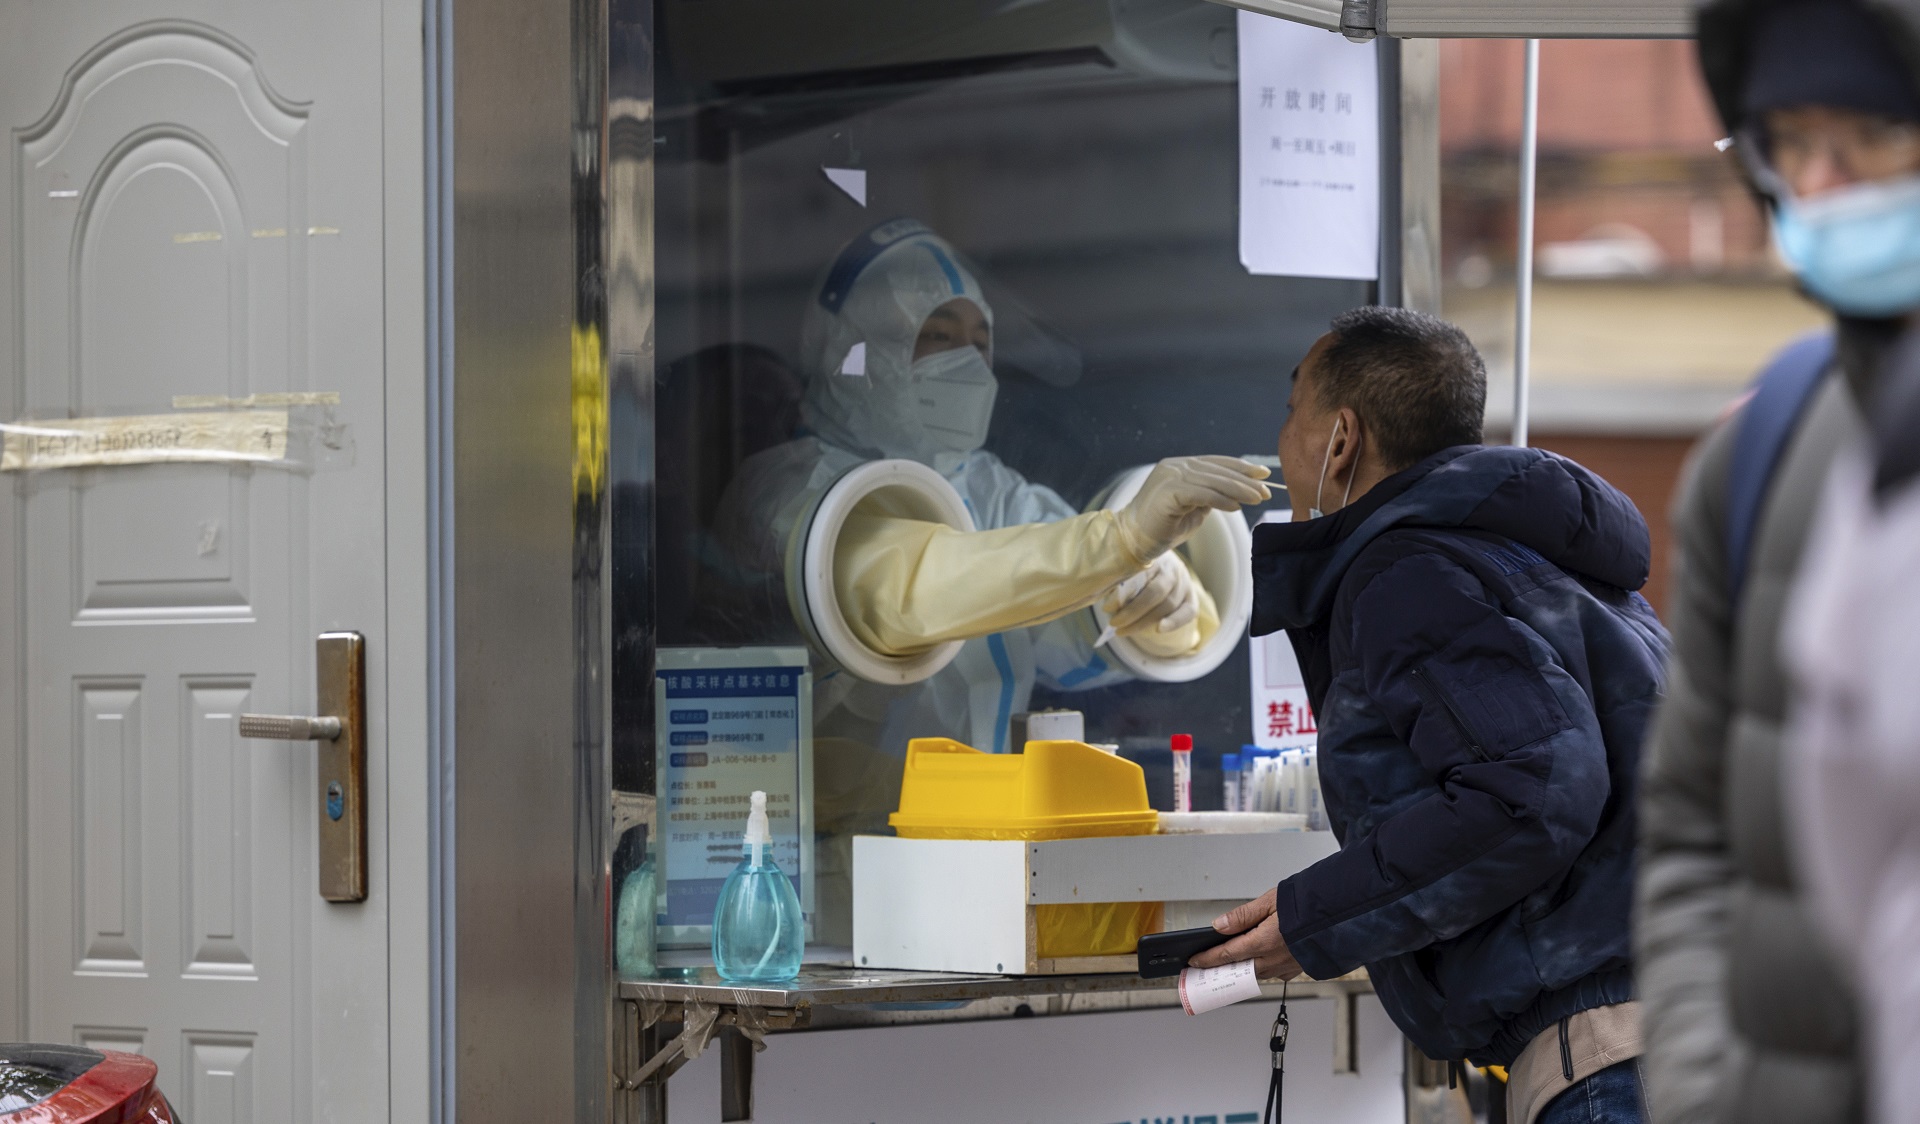 El coronavirus que originó la pandemia había estado circulando en China en 2019 sin ser detectado por la vigilancia de salud pública / (AP Photo/Andrew Braun)